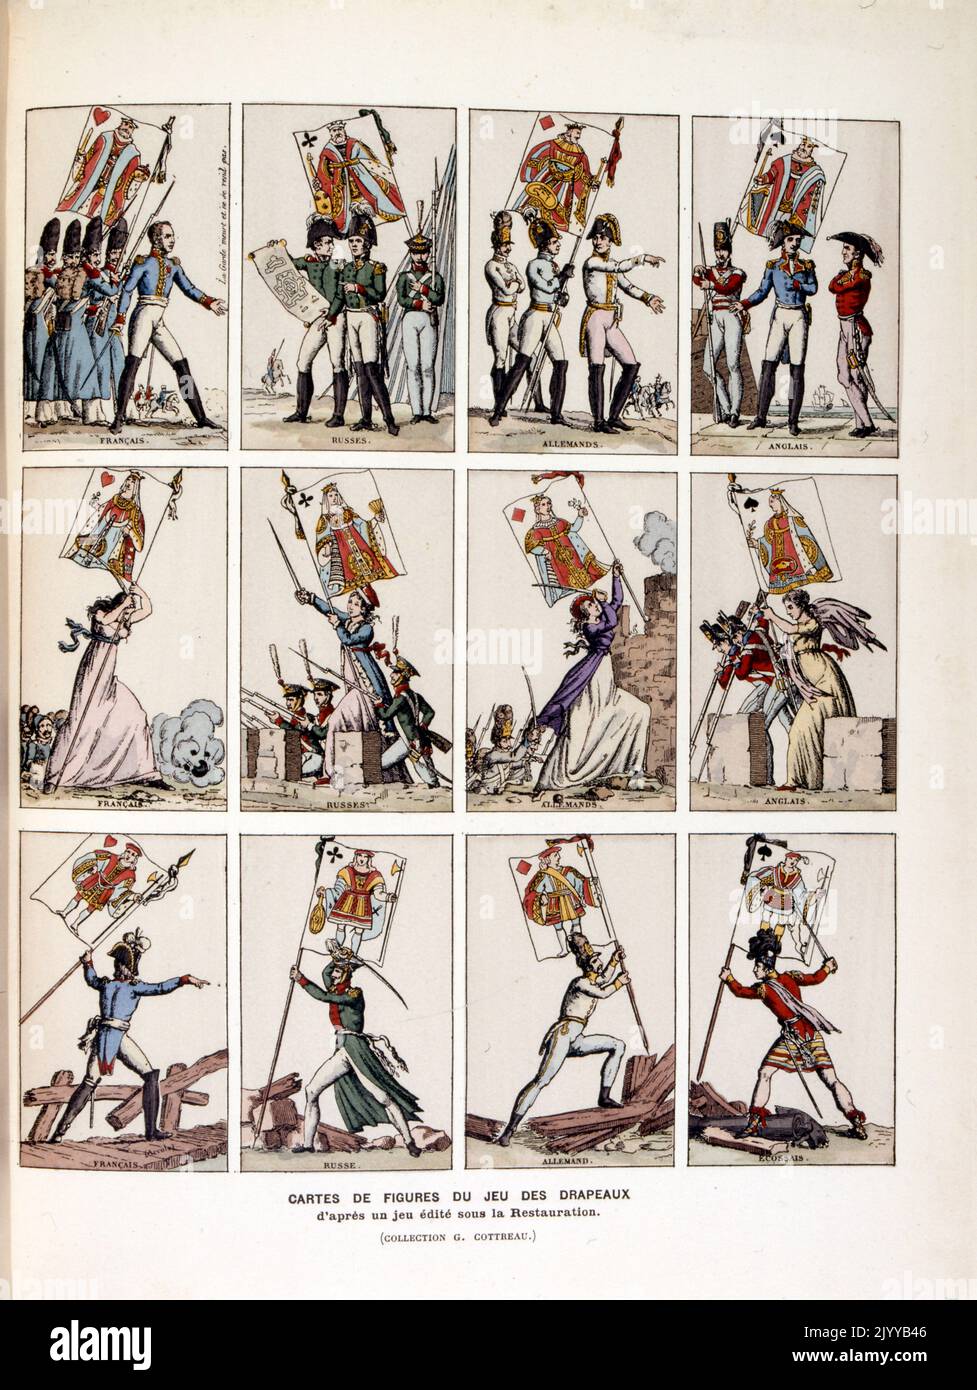 Farbige Abbildung von Spielkarten mit Figuren aus dem Spiel Drapeaux. Stockfoto